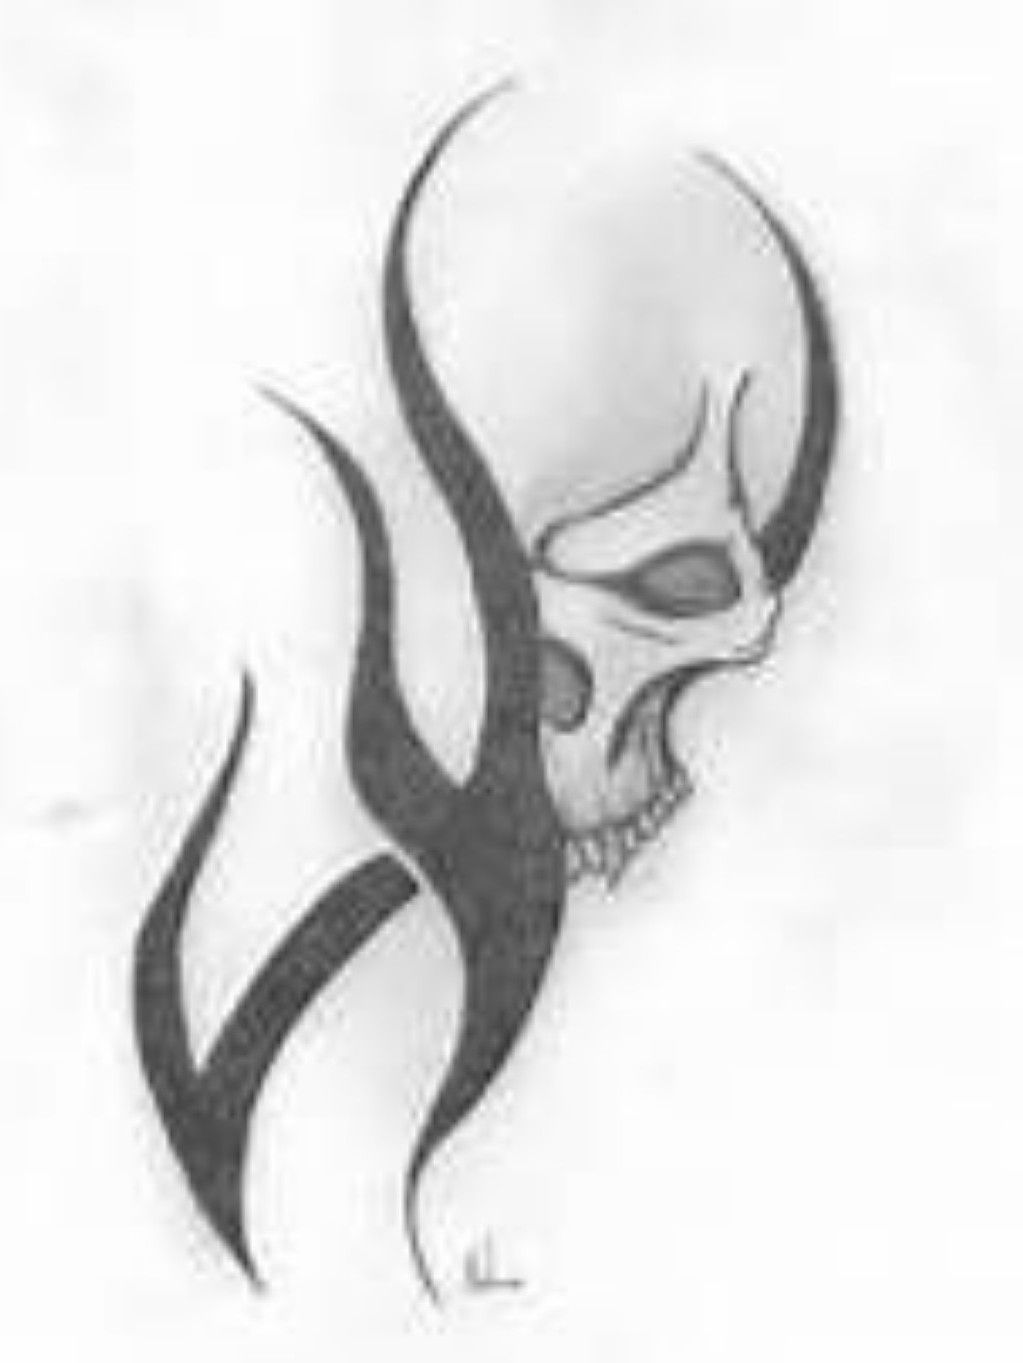 simple tribal skull tattoos